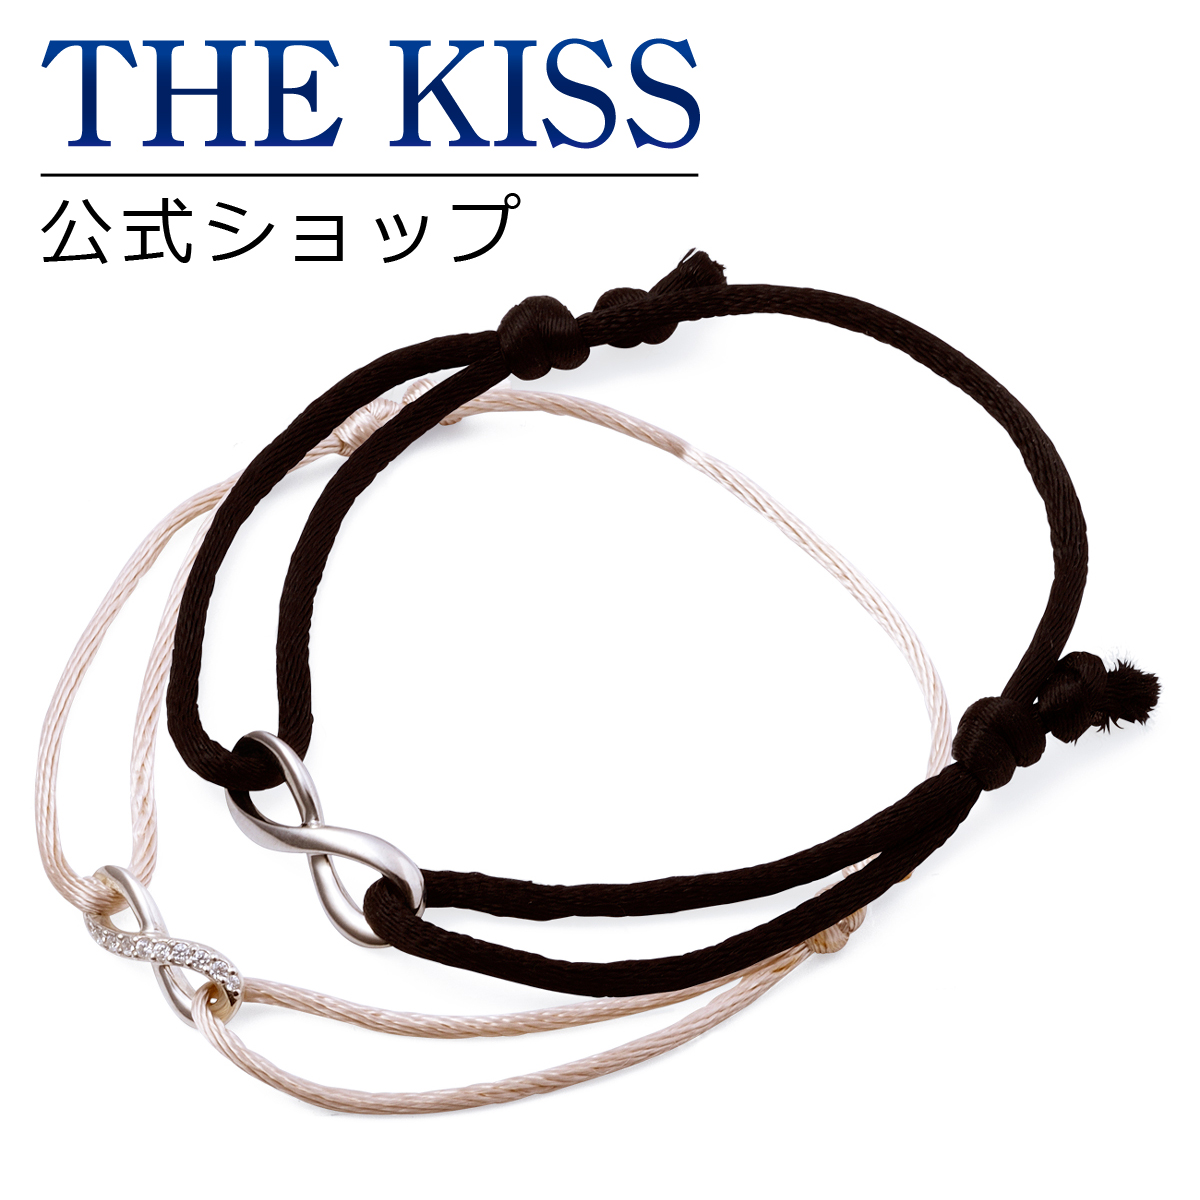 THE KISS 公式サイト シルバー ペアブレスレット ペアアクセサリー カップル に 人気 の ジュエリーブランド THEKISS ペア ブレスレット 記念日 プレゼント SBR2902CB-2903 セット シンプル ザキス 